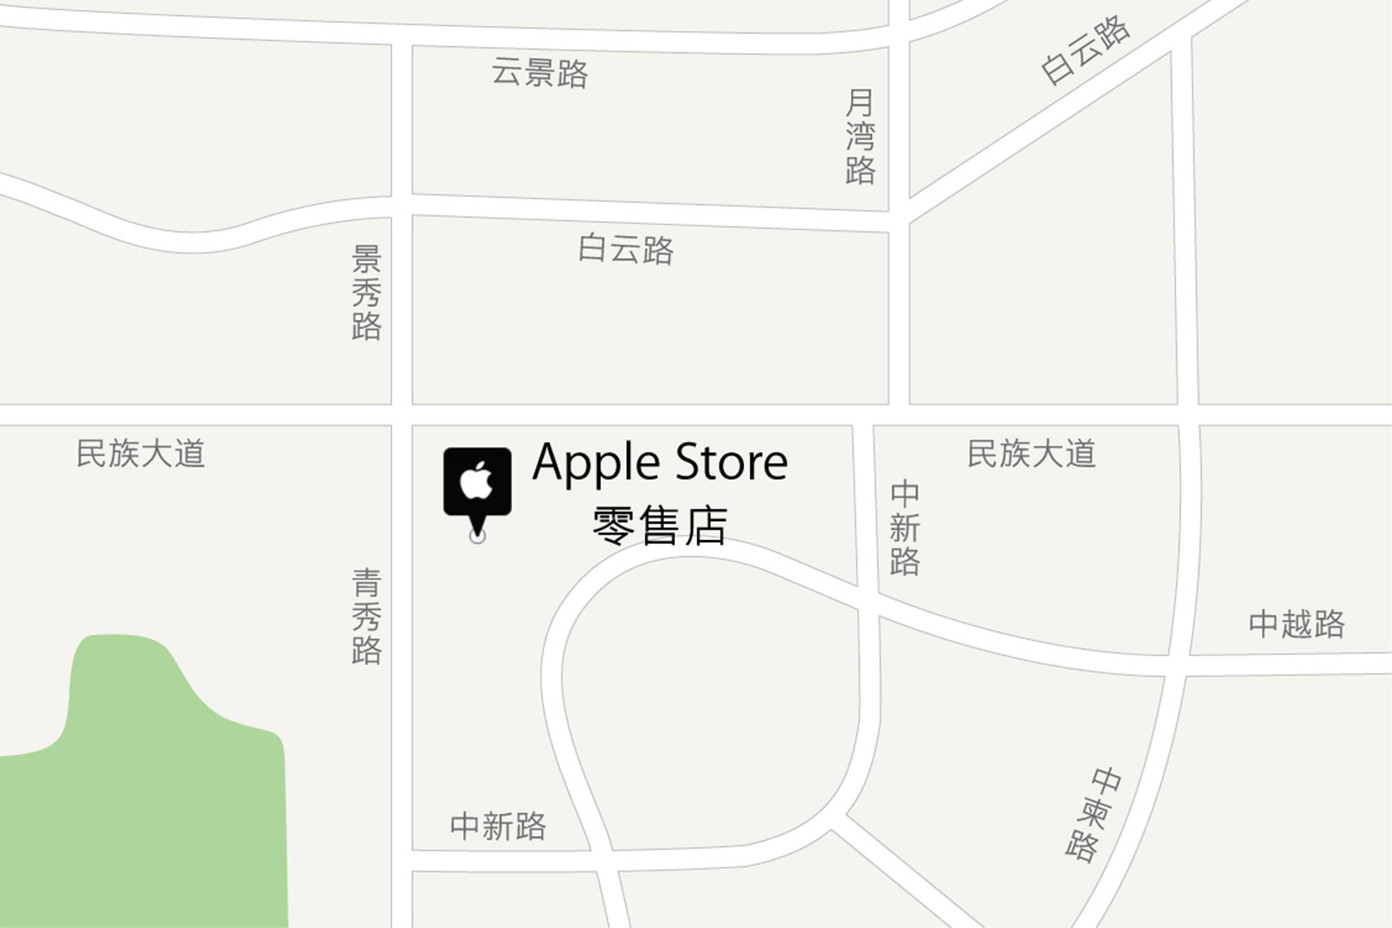 南宁万象城 Apple Store 零售店